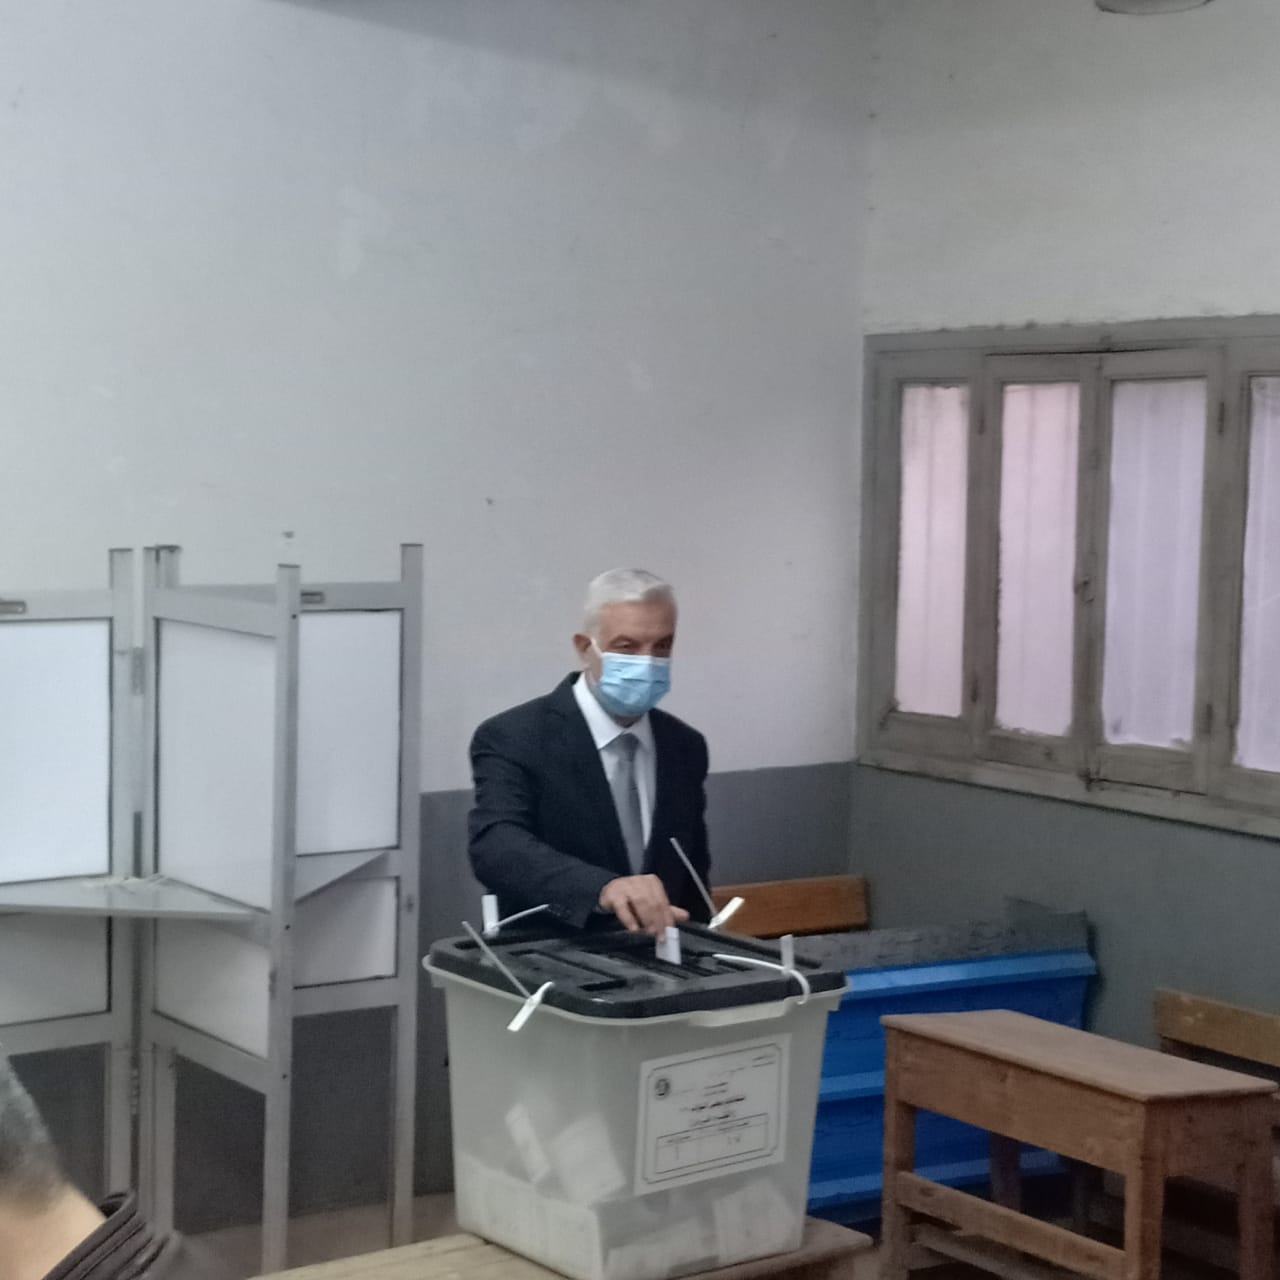   رئيس جامعة المنوفية يدلى بصوته في جولة الإعادة بانتخابات النواب